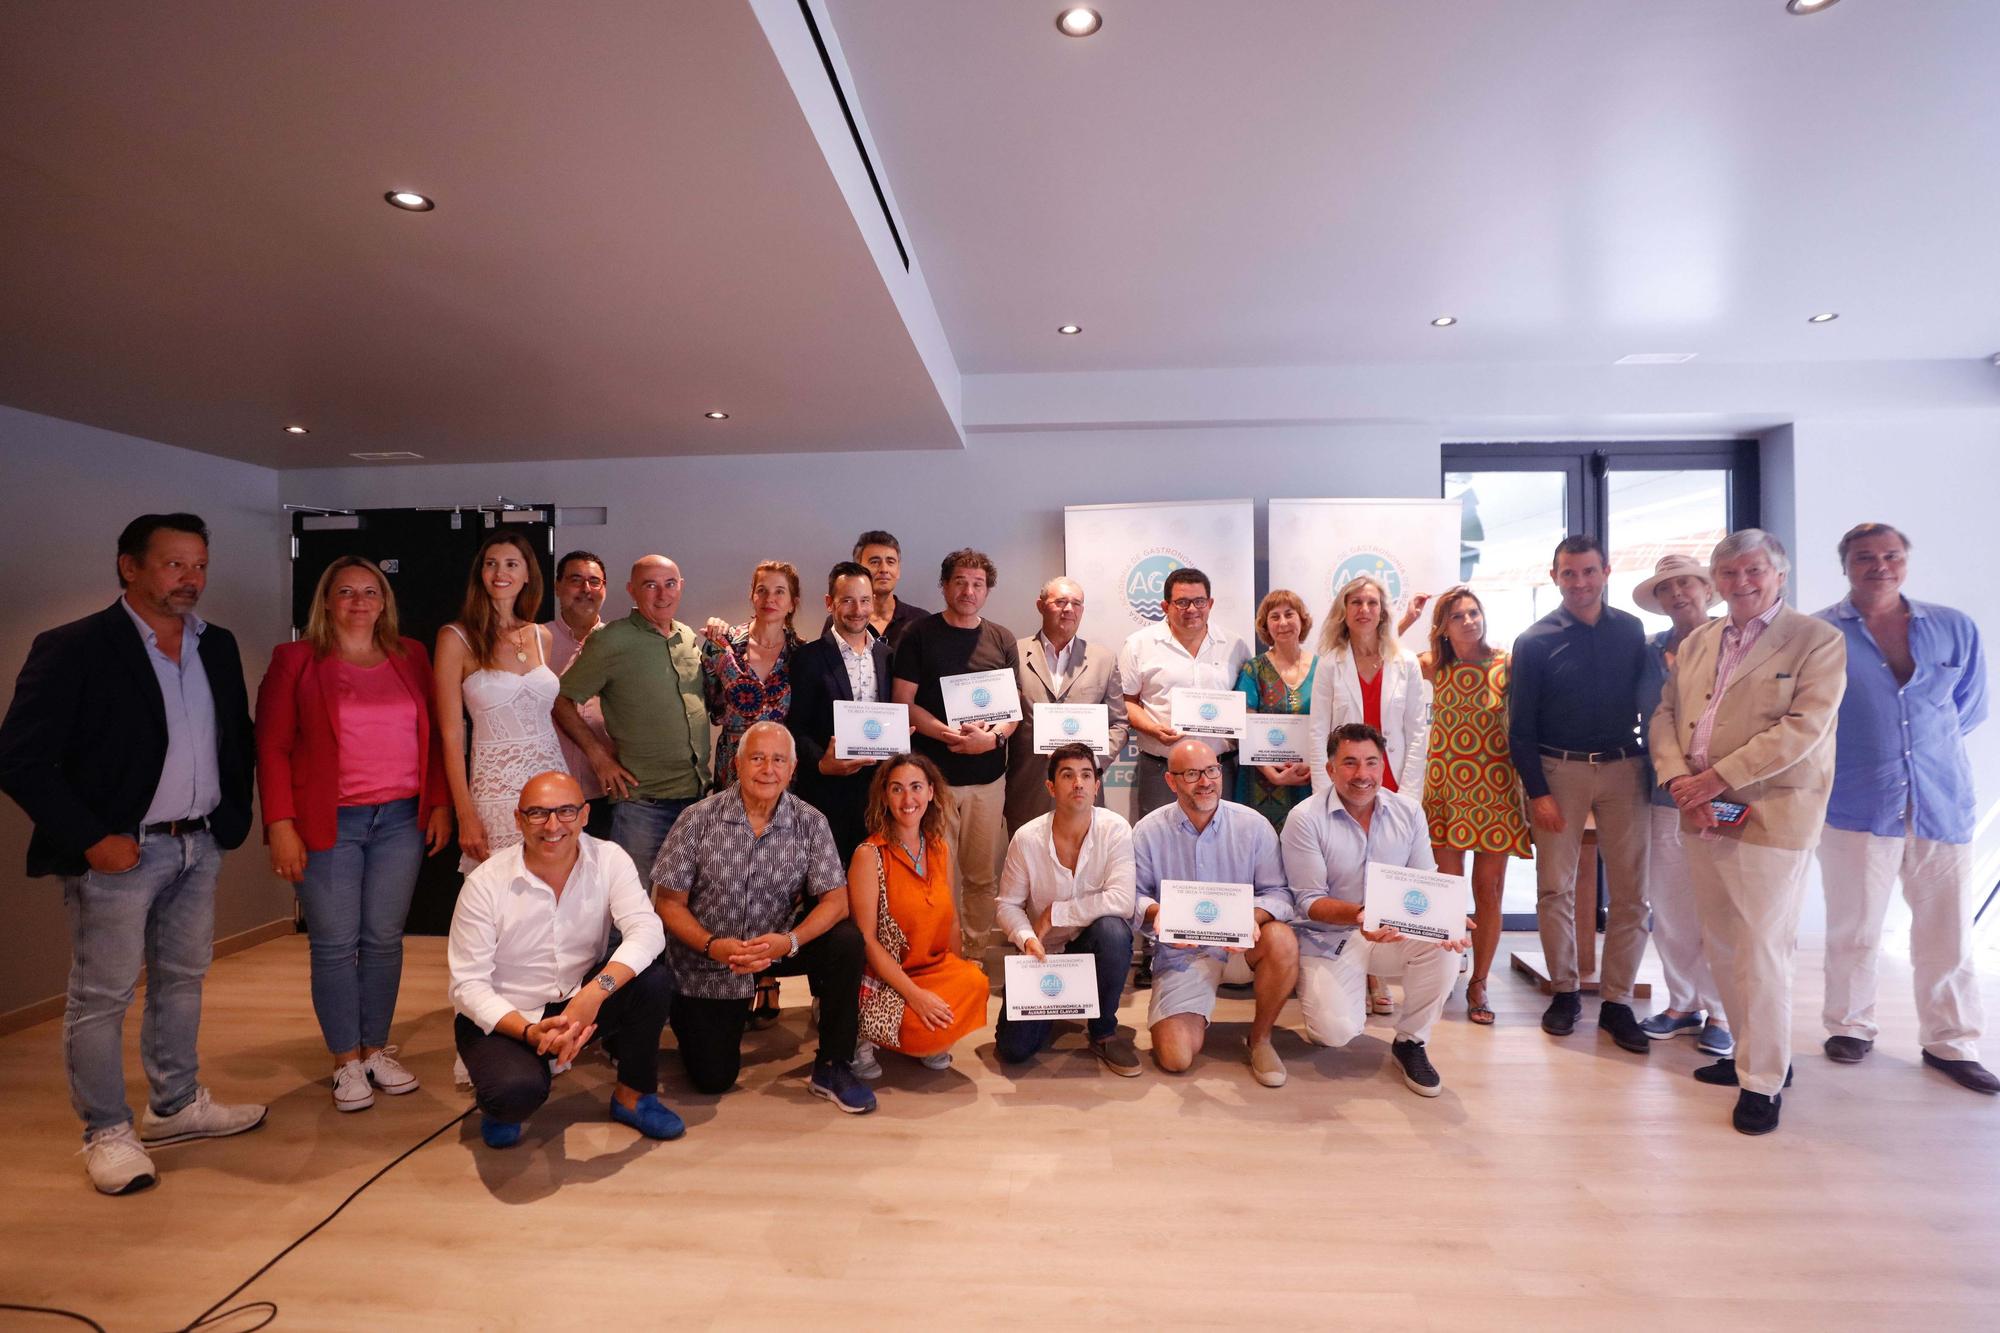 Premio a la innovación de la Academia de Gastronomía de Ibiza y Formentera.